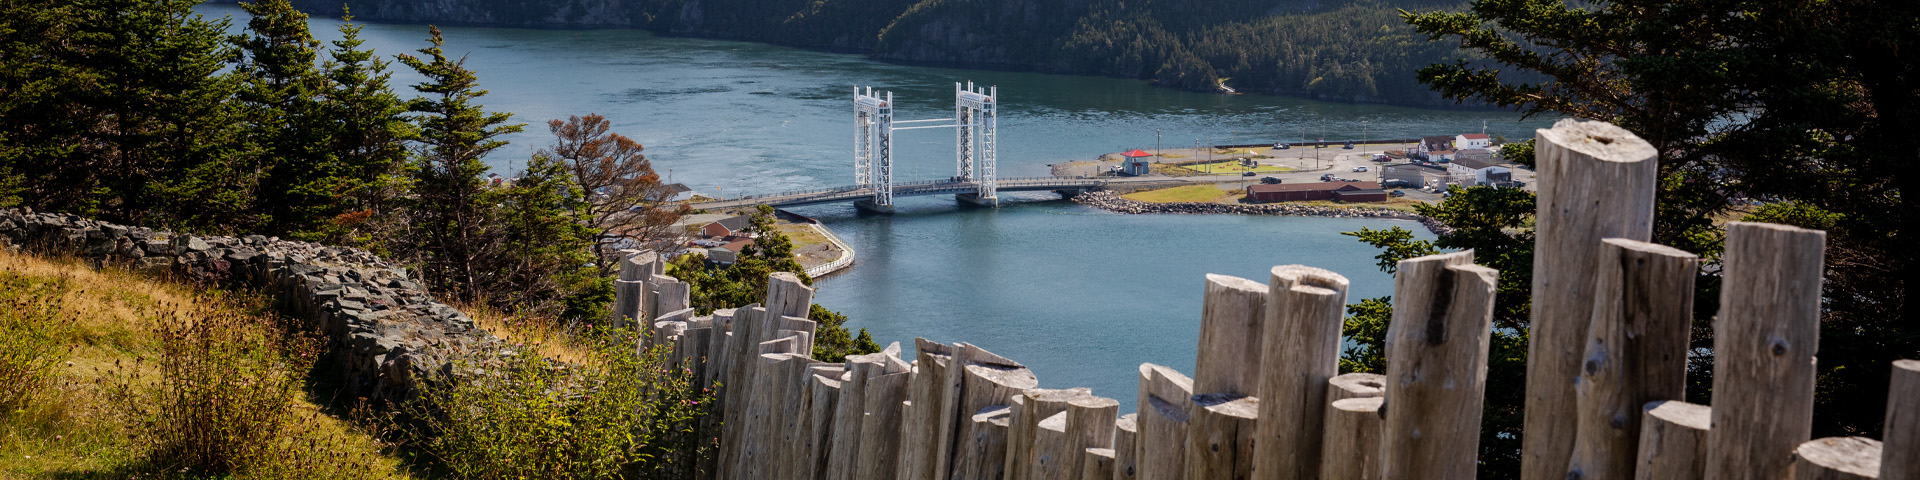 gros plan d'une clôture en bois donnant sur une vue de l'océan avec un grand pont